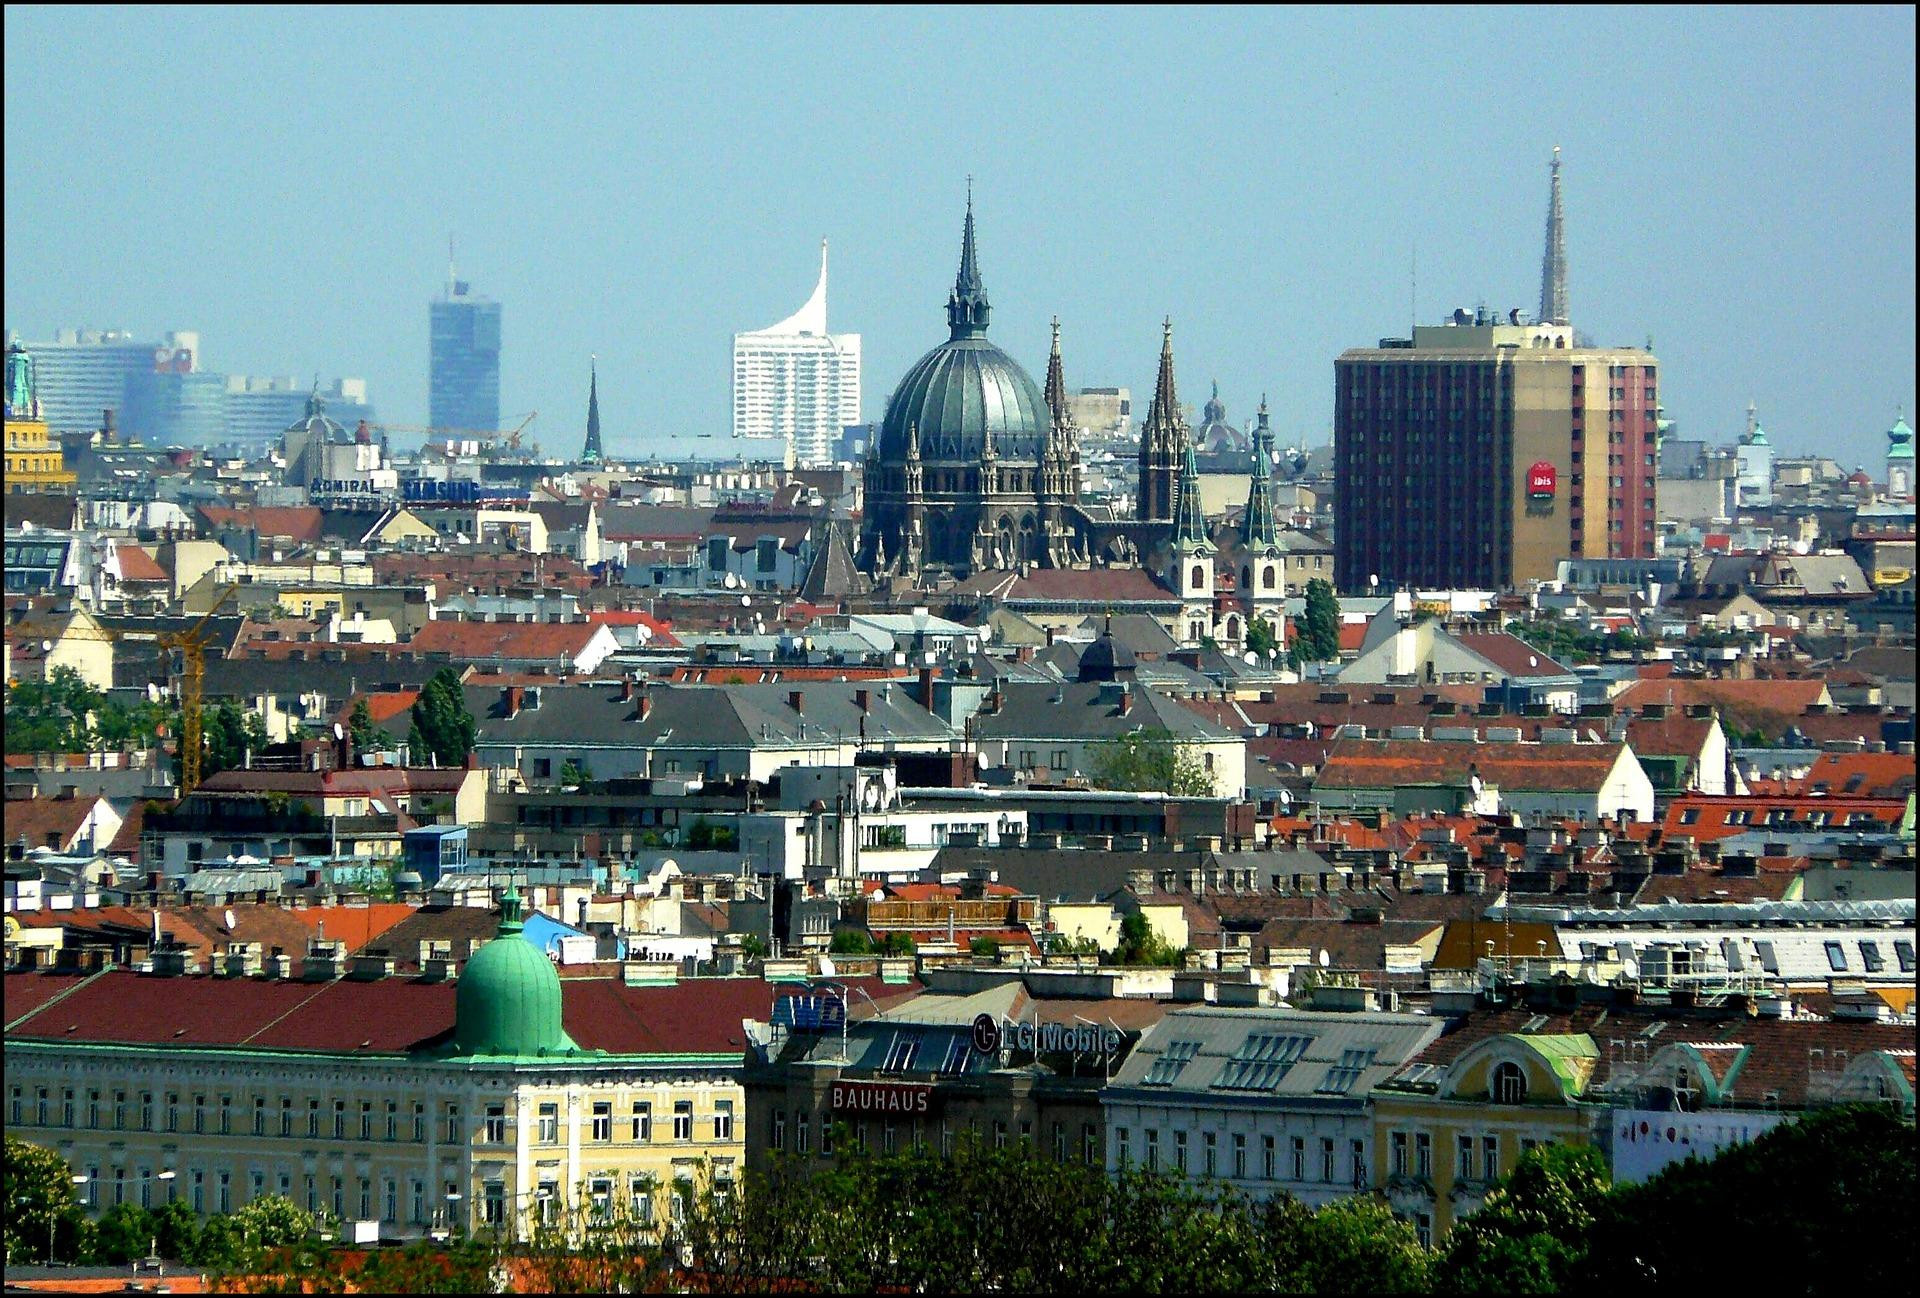 Una imagen de archivo de Viena, ciudad que ofrece la mejor calidad de vida del mundo según el estudio de Mercer